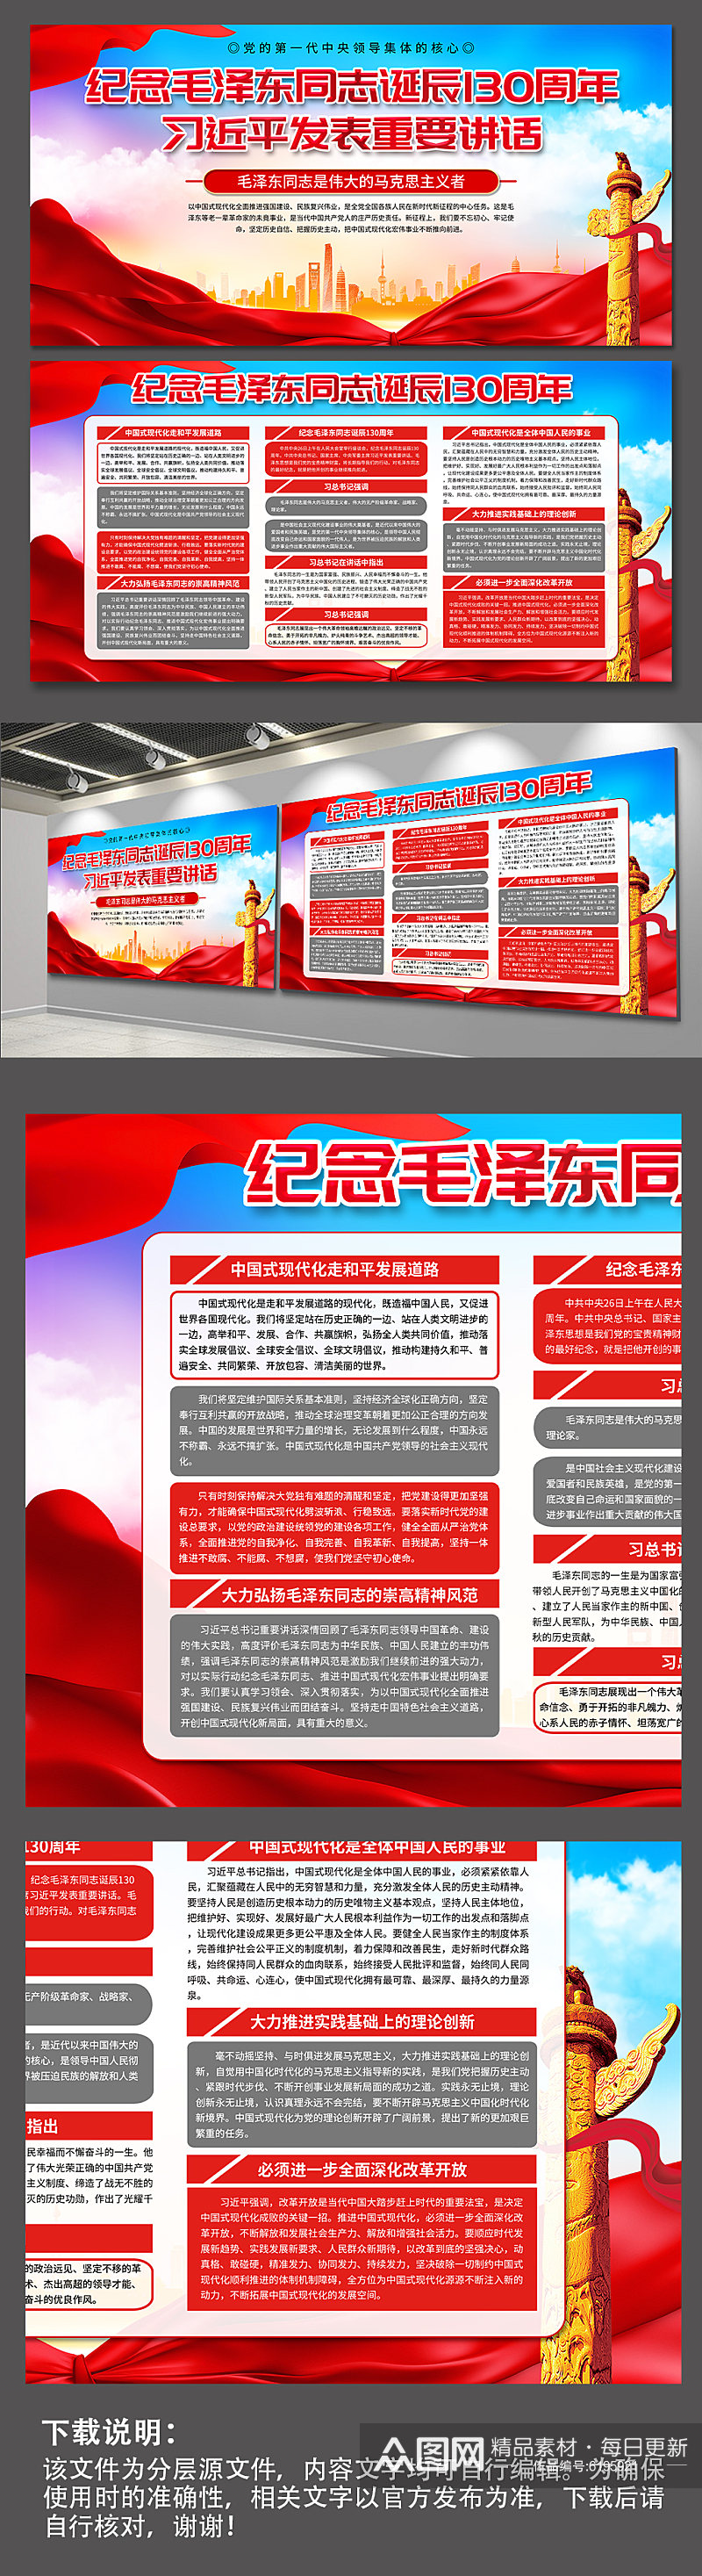 纪念毛泽东同志诞辰130周年党建展板素材